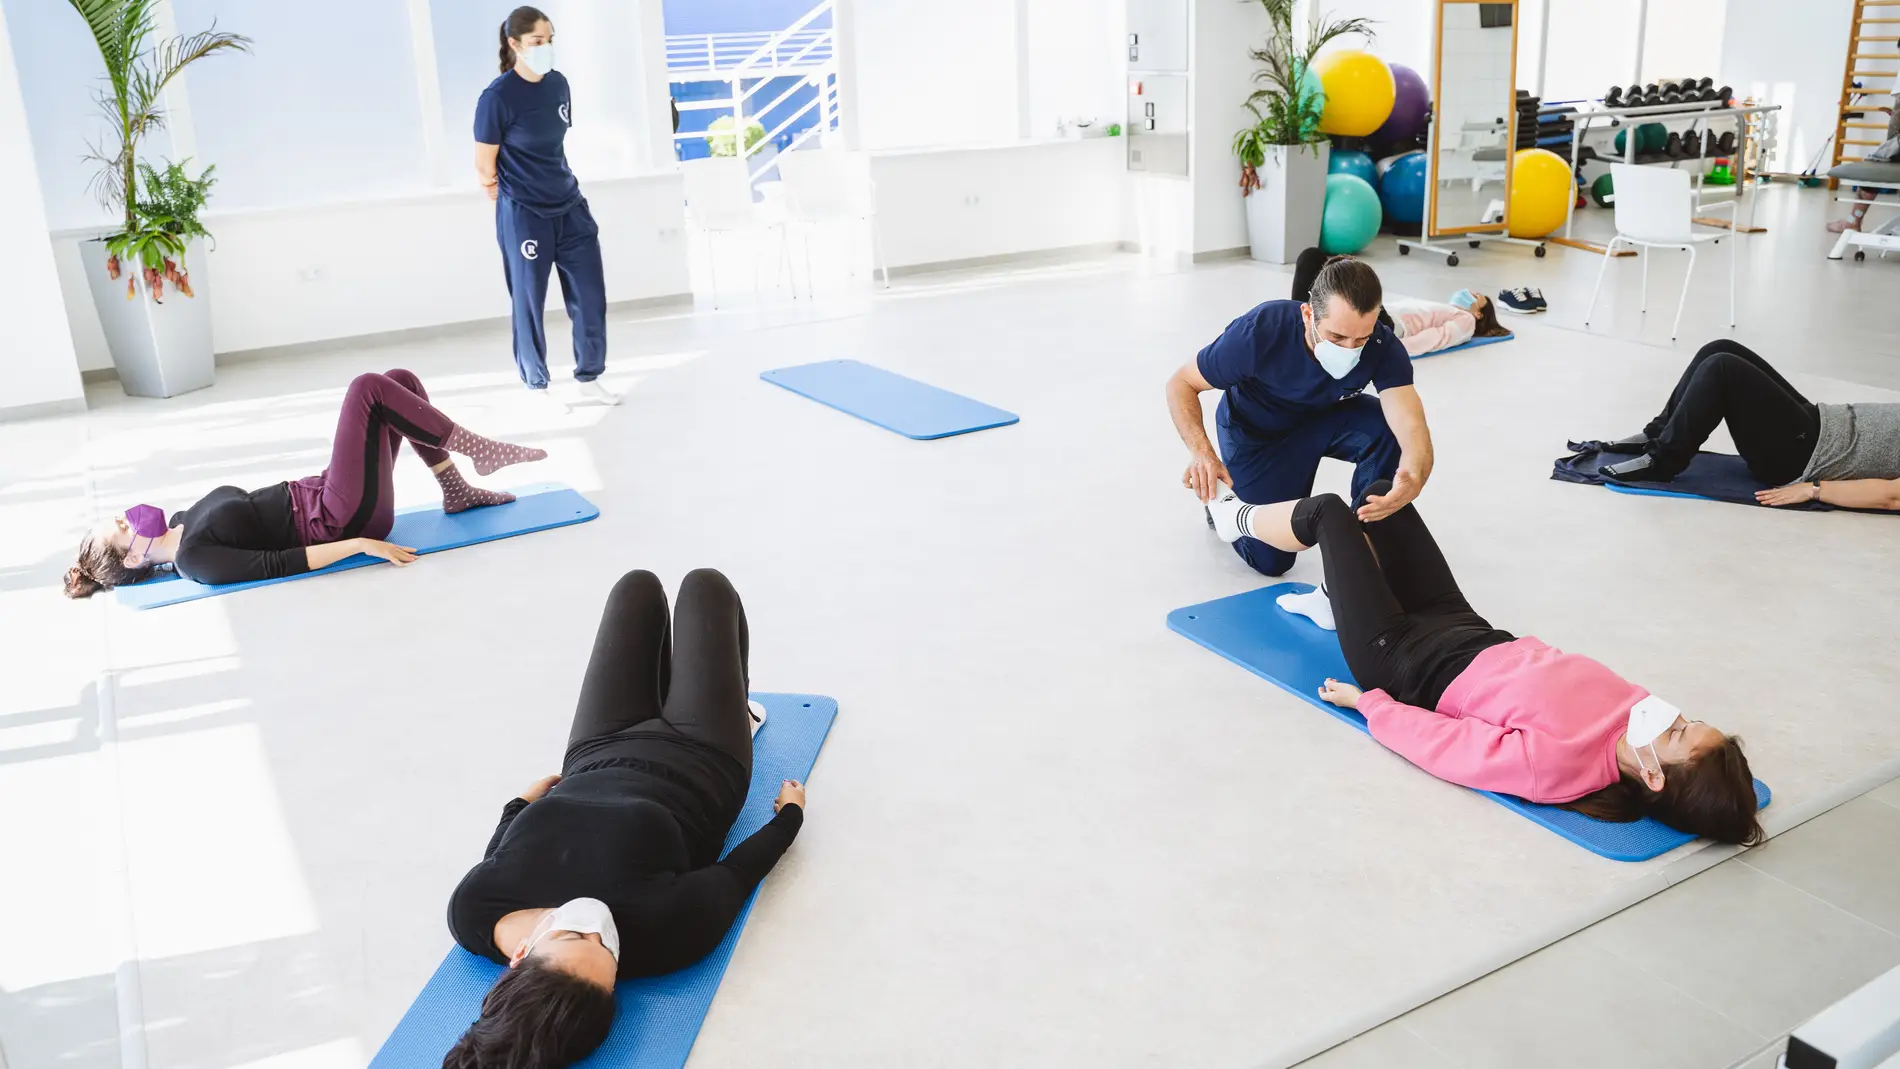 Unidad de Fisioterapia de la Clínica Vila Parc, centrada en la máxima rapidez y eficacia en la recuperación de sus pacientes